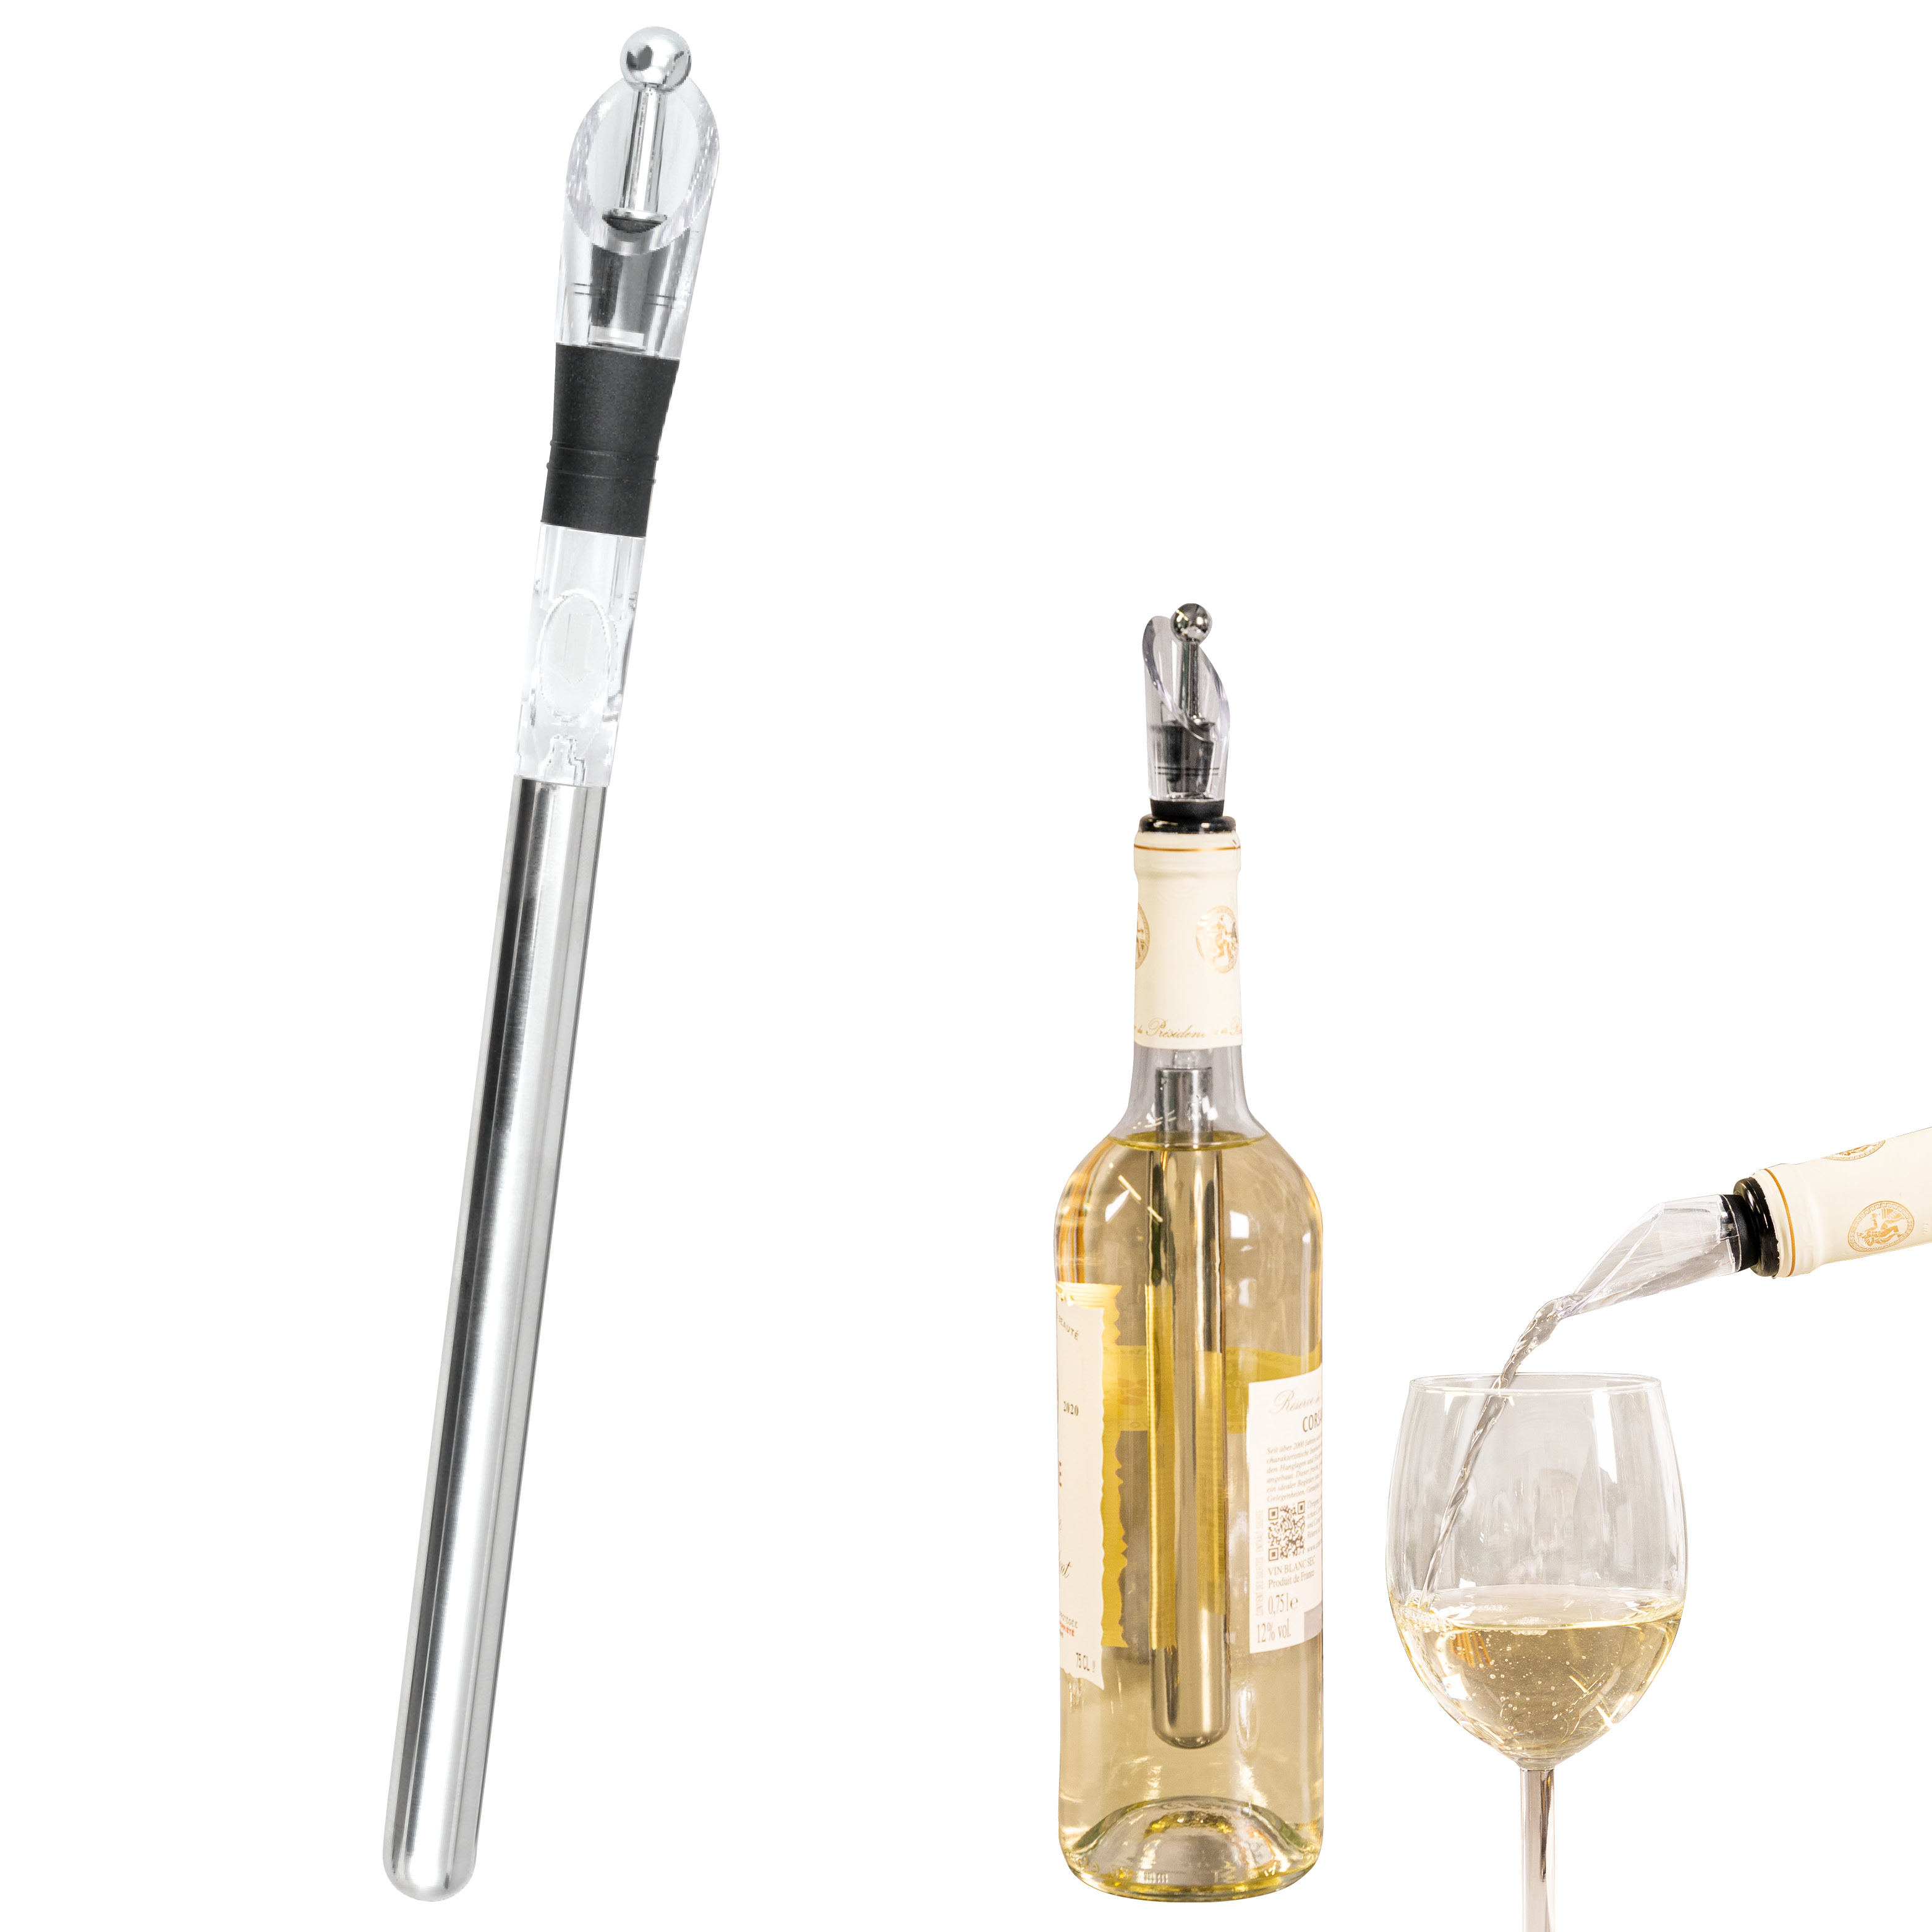 Wein-Ausgießer mit Edelstahl-Kühlstab und Weinverschluss, Weinkühler, Weinverschluss, Weinausgießer